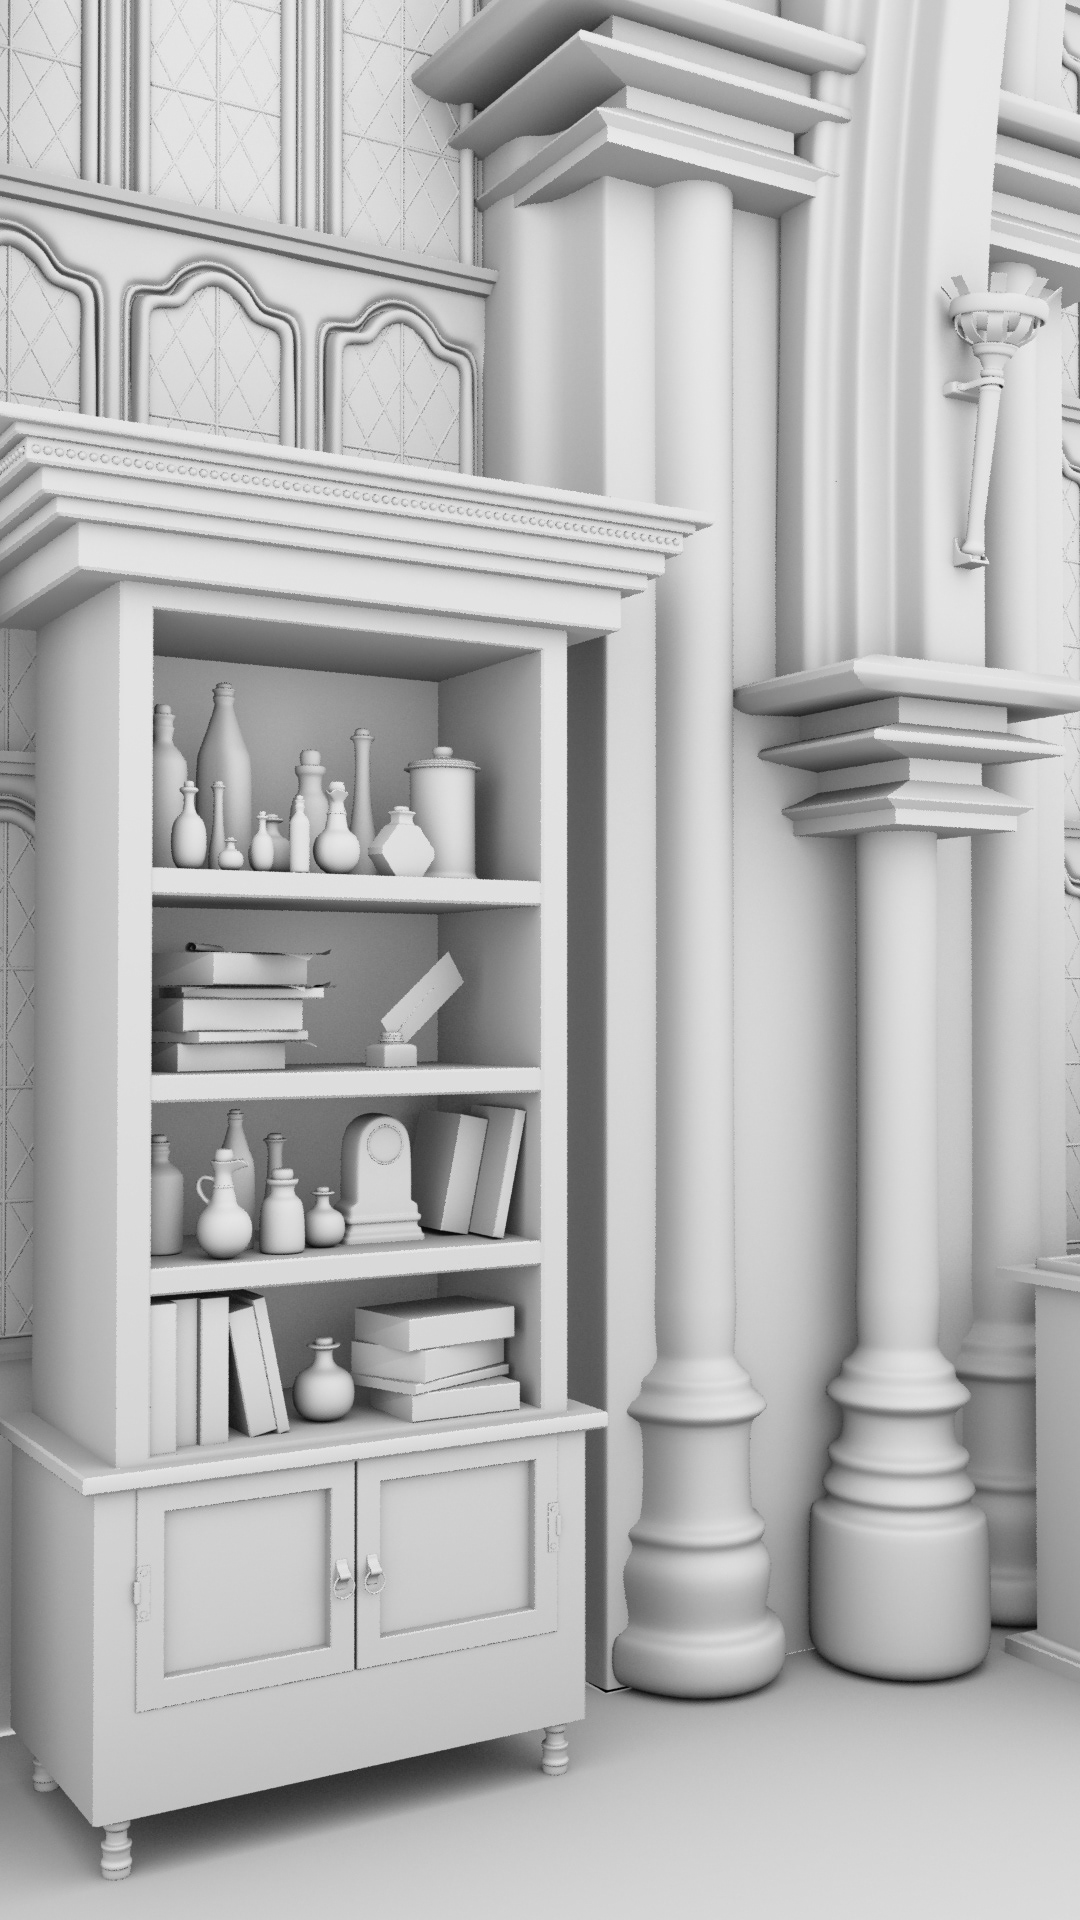 3d artist 3D WORK 3D harry potter infirmary 3D room